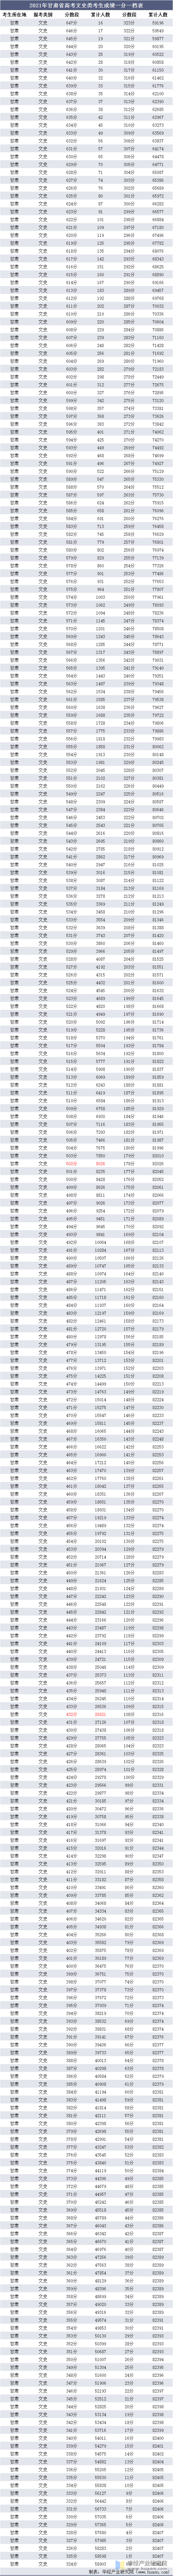 2021年甘肃省高考文史类考生成绩一分一档表